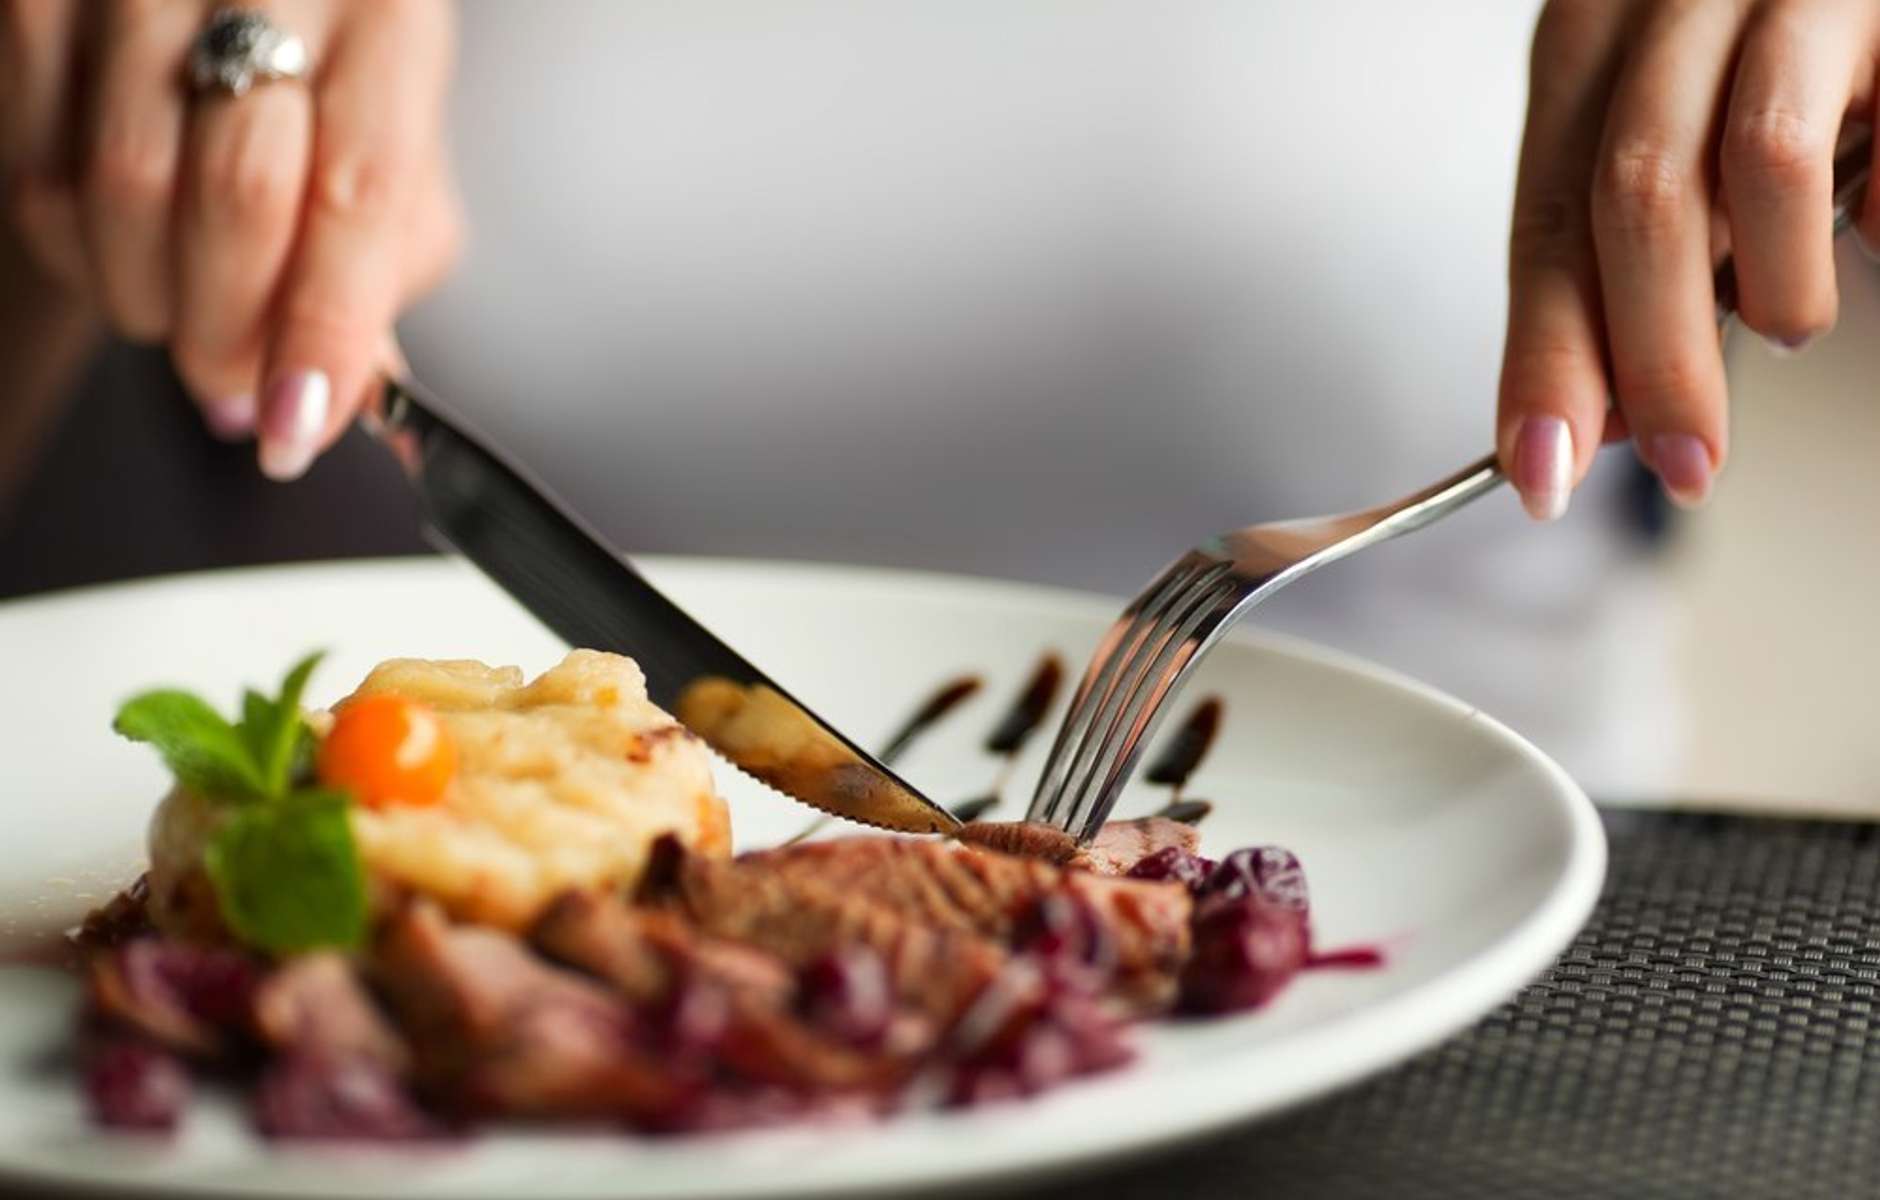 Конец ужина. Еда с вилкой и ножом. Еда в ресторане. Тарелка с едой в руках. Кушать вилкой и ножом.